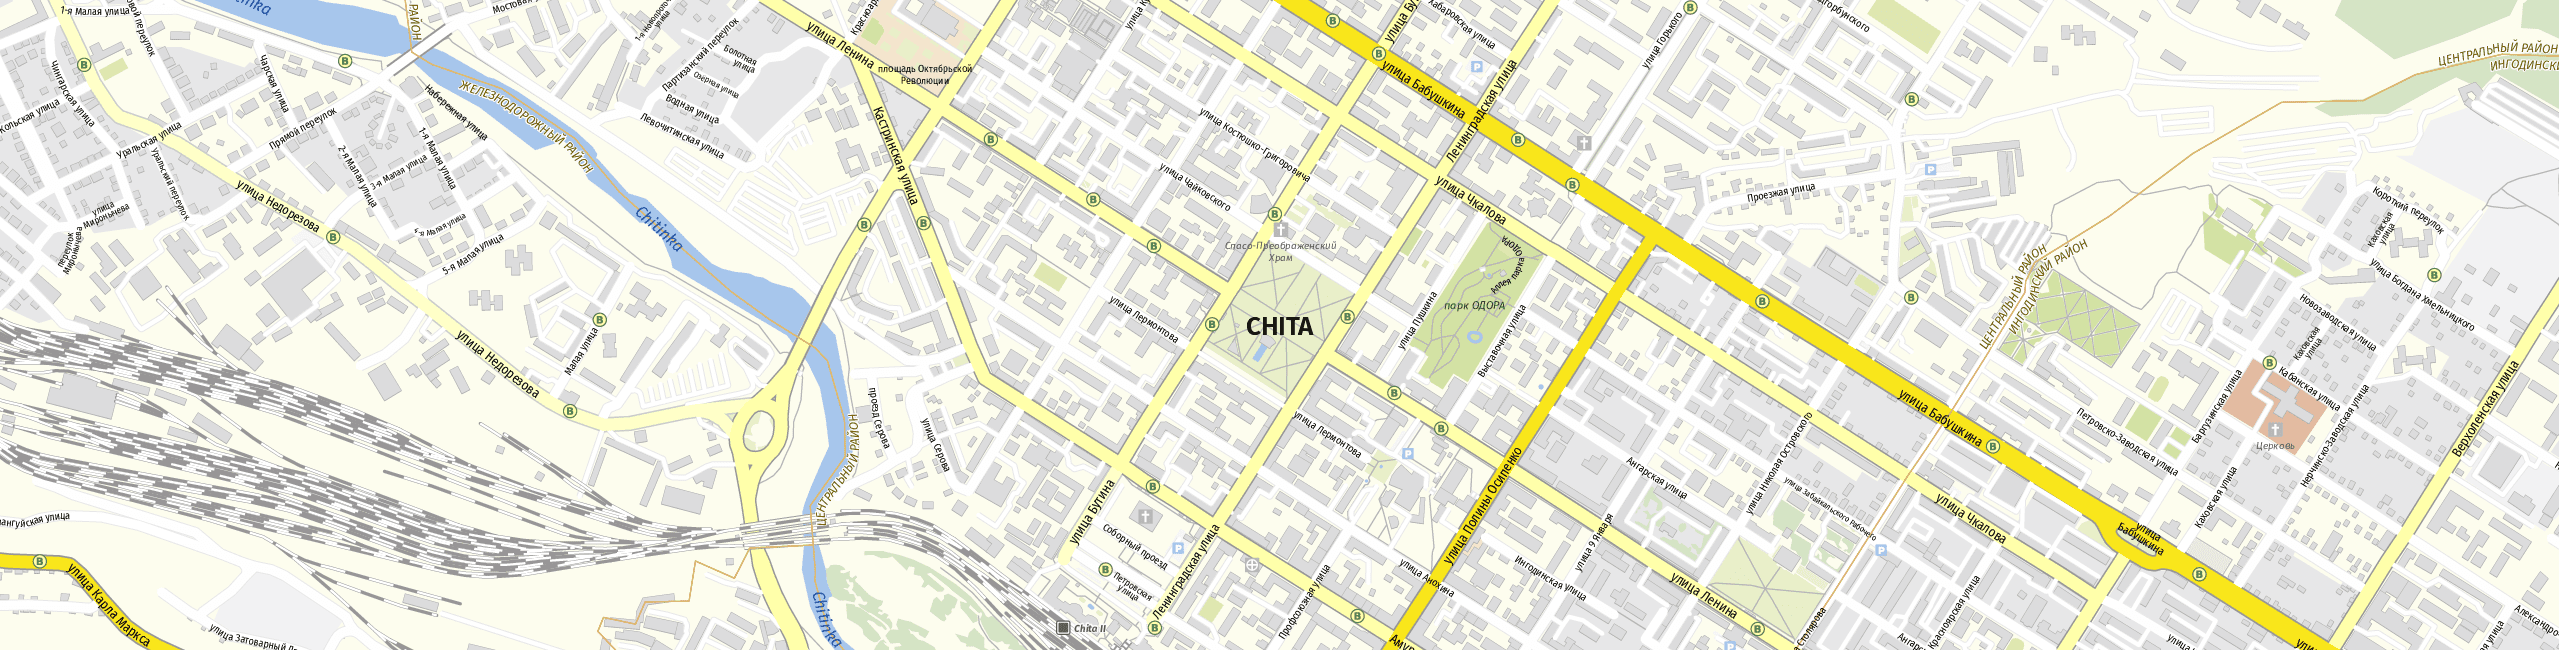 Stadtplan Chita zum Downloaden.